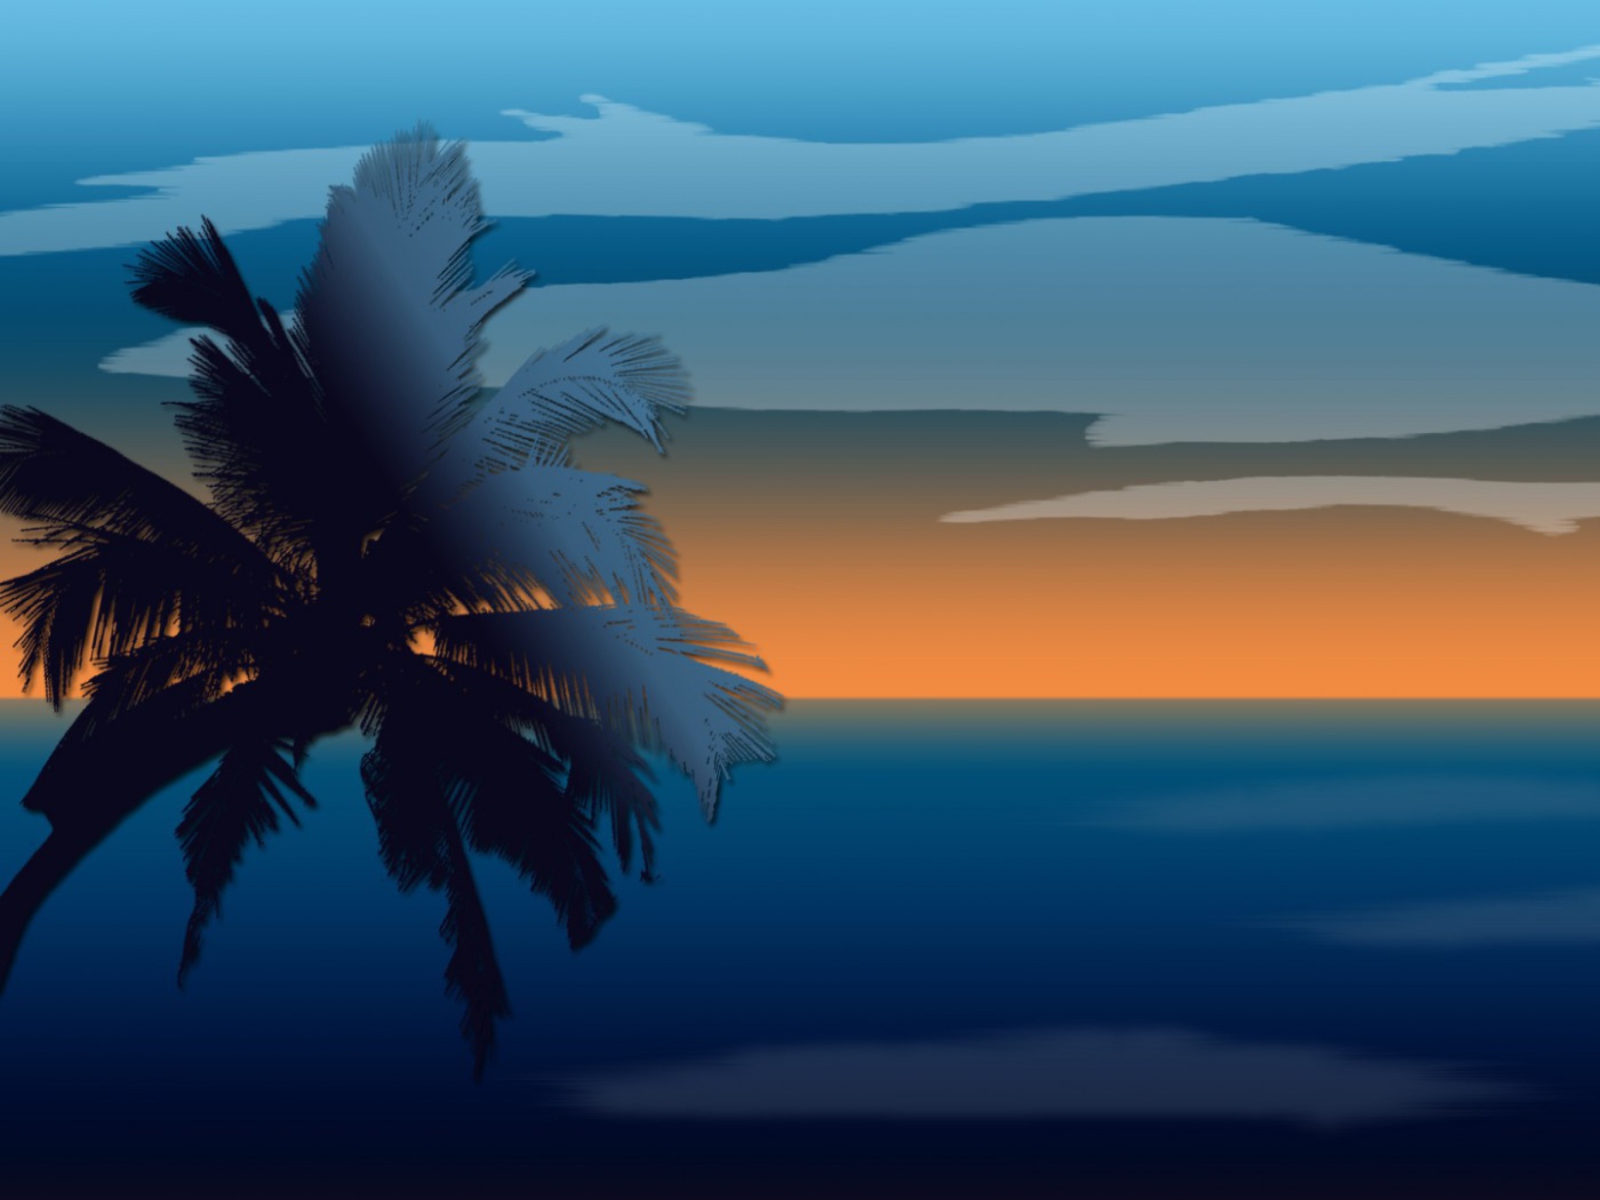 Обои Palm And Sunset Computer Graphic 1600x1200